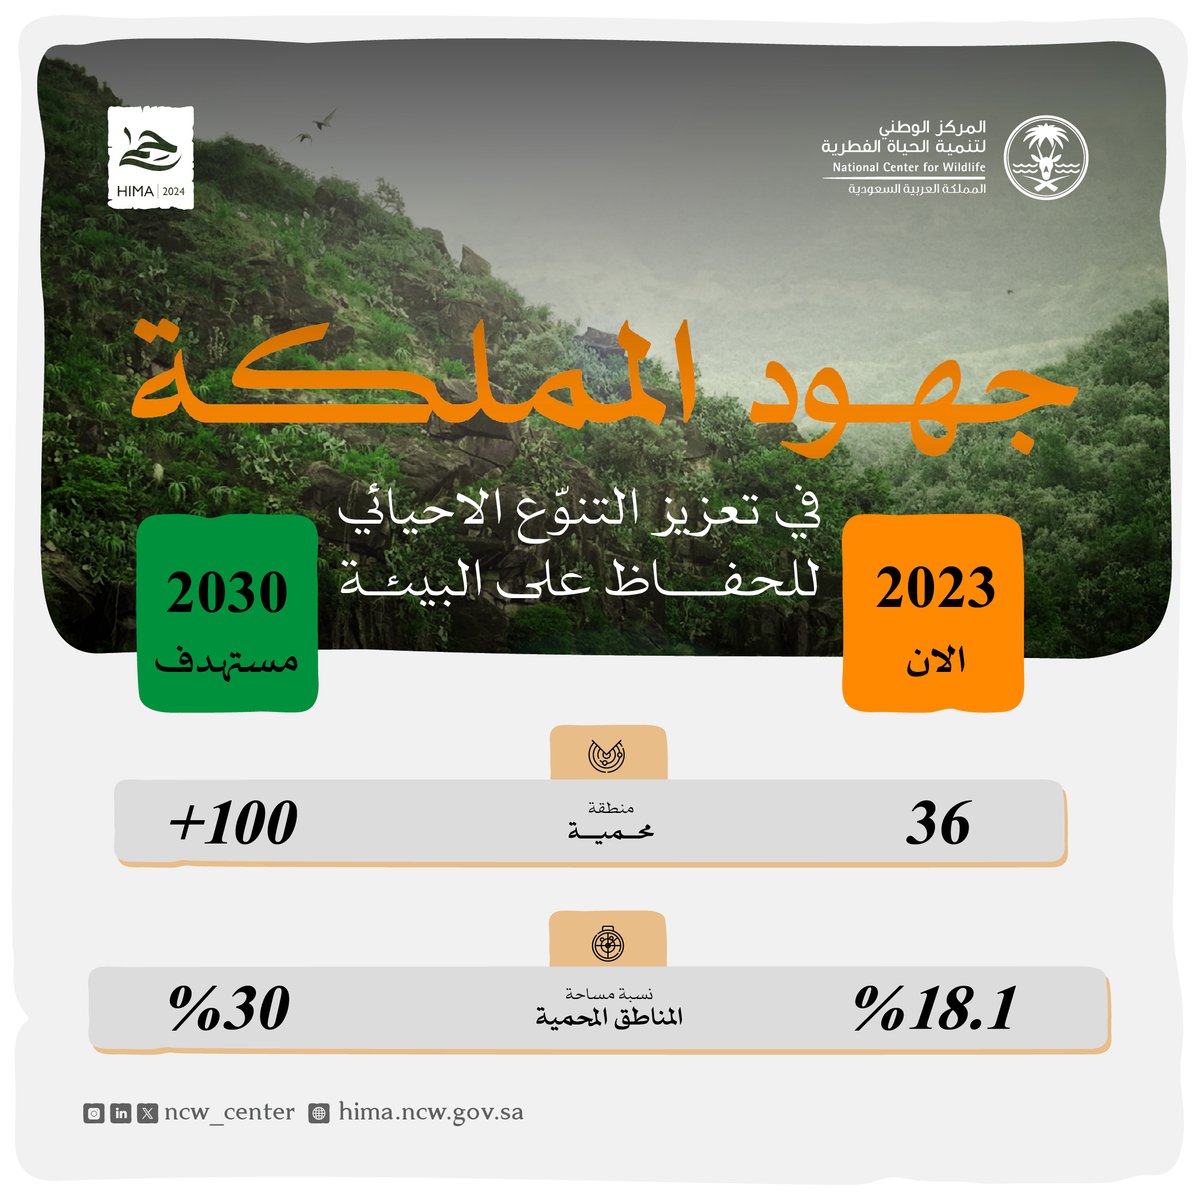 تضم المملكة حاليًا 36 محمية طبيعية، تغطي 18.1% من مساحتها. ويهدف المركز بحلول عام 2030 إلى تخصيص 30% من أراضي المملكة لتصبح محميات طبيعية تماشياً مع مبادرة السعودية الخضراء @Gi_Saudi والإطار العالمي للتنوع الأحيائي، وتأكيدًا لالتزام المملكة في الحفاظ على البيئة. #حِمى…